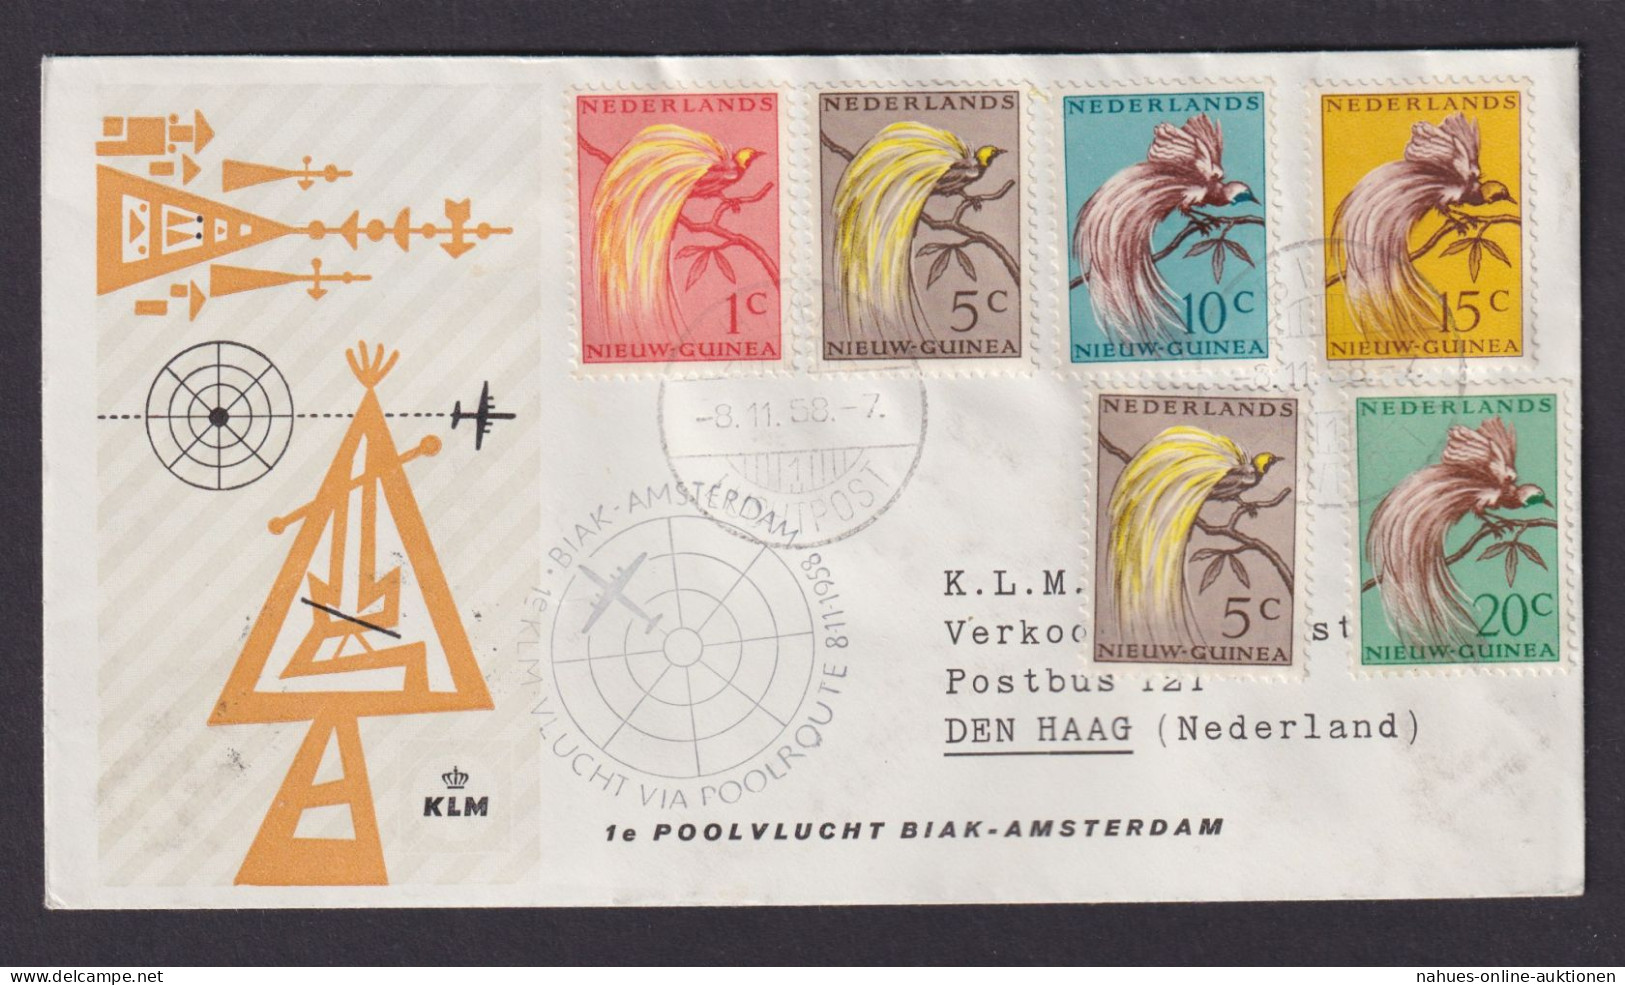 Flugpost Brief Air Mail Niederlande Neu Guinea Biak Amsterdam Polar Route - Niederländisch-Neuguinea